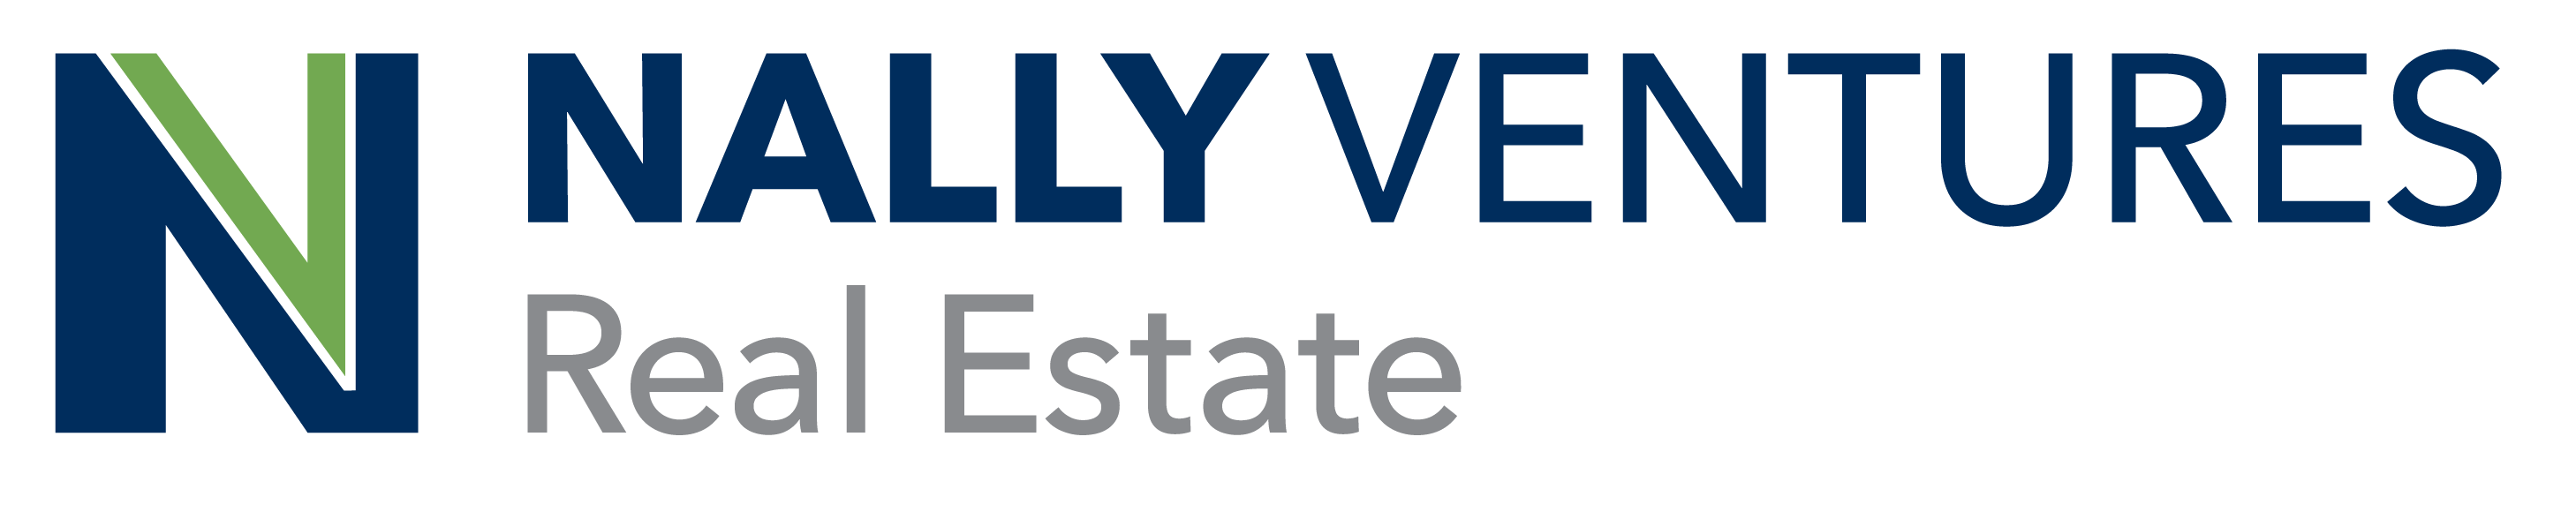 NV Real Estate logo_RGB (1)